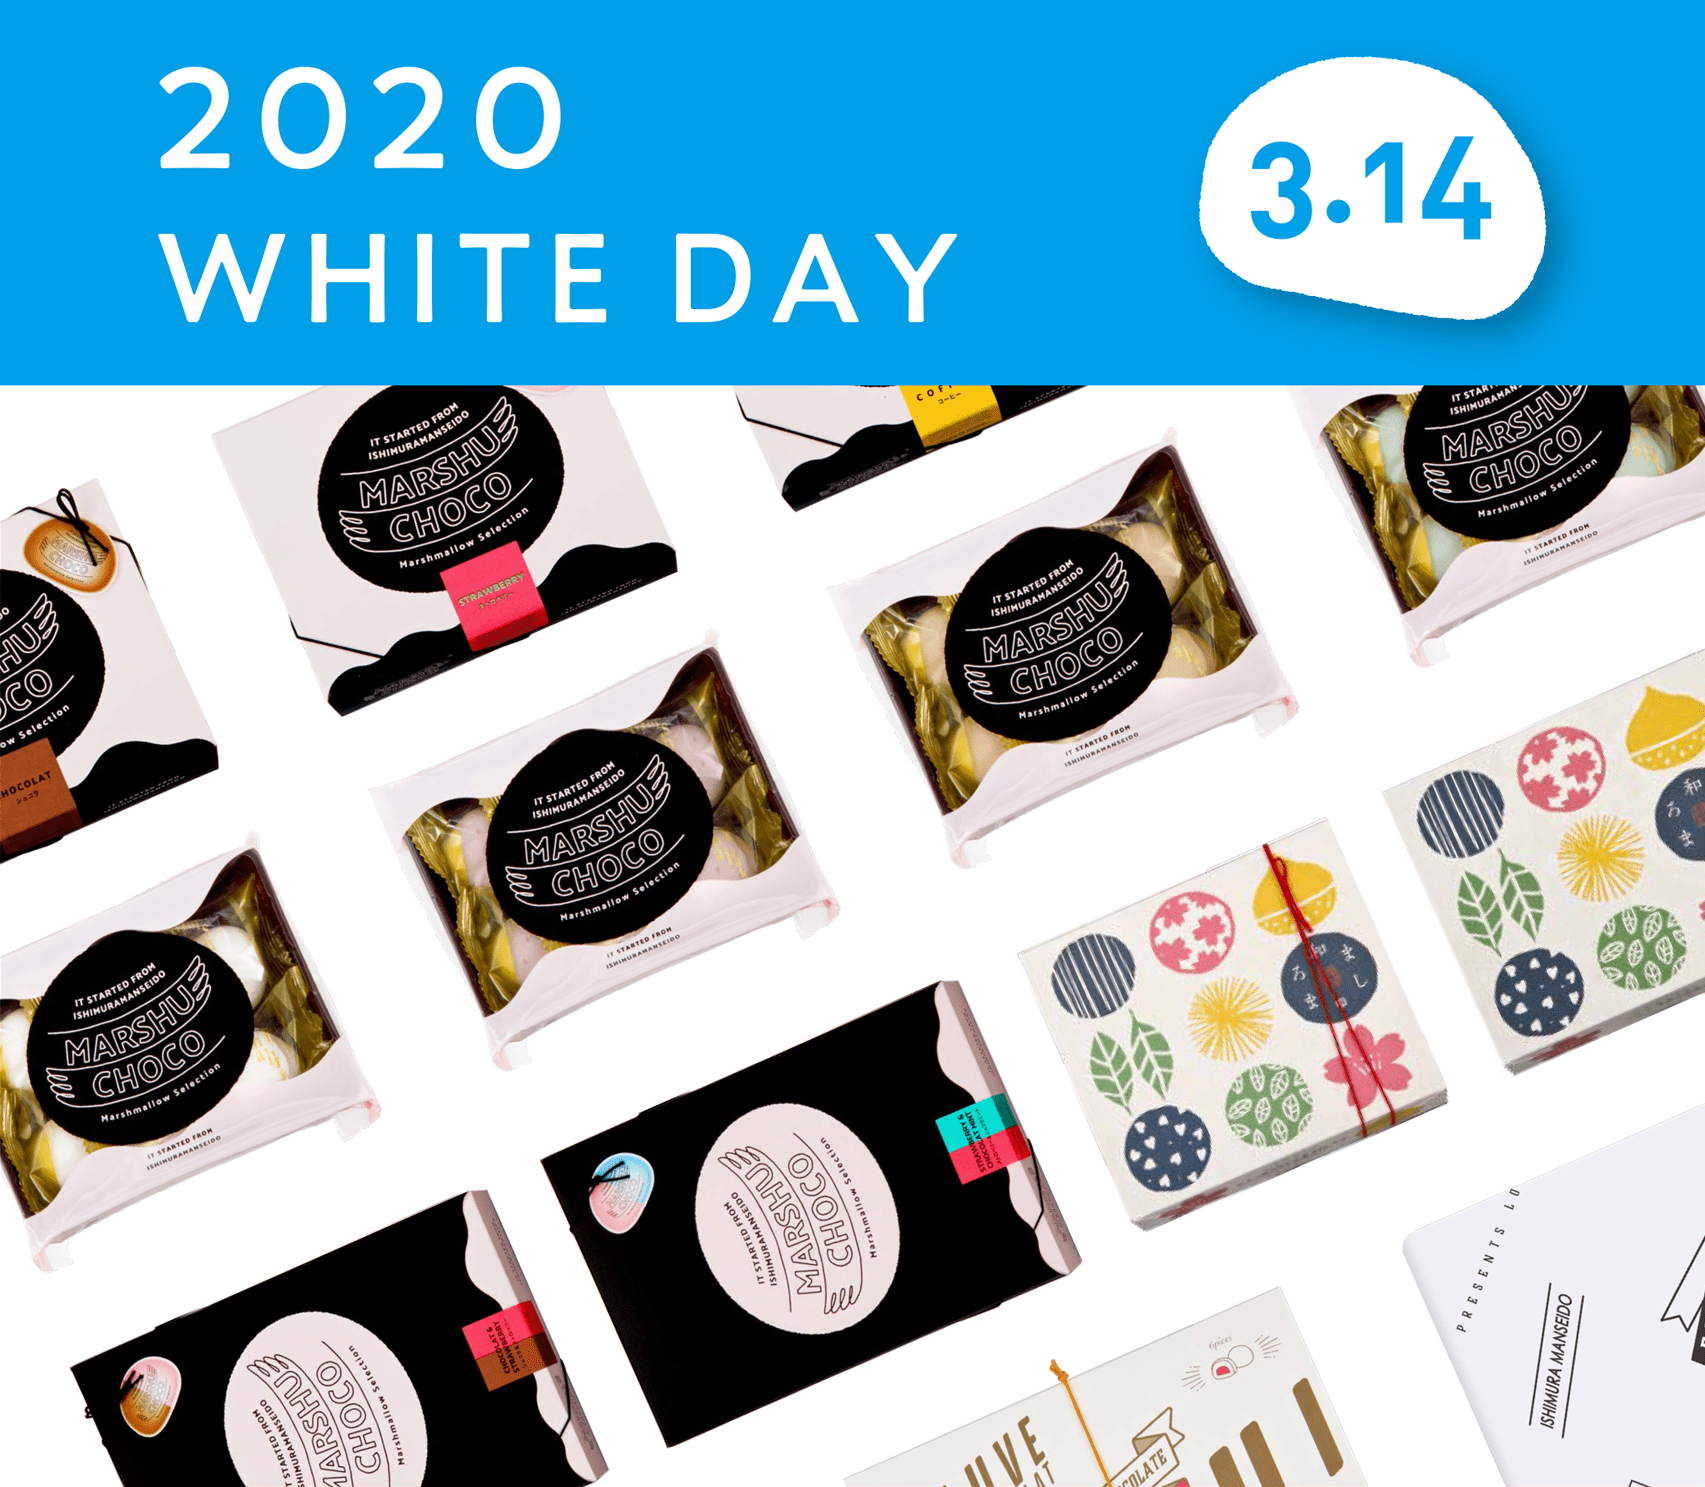 2020 WHITE DAY 3.14